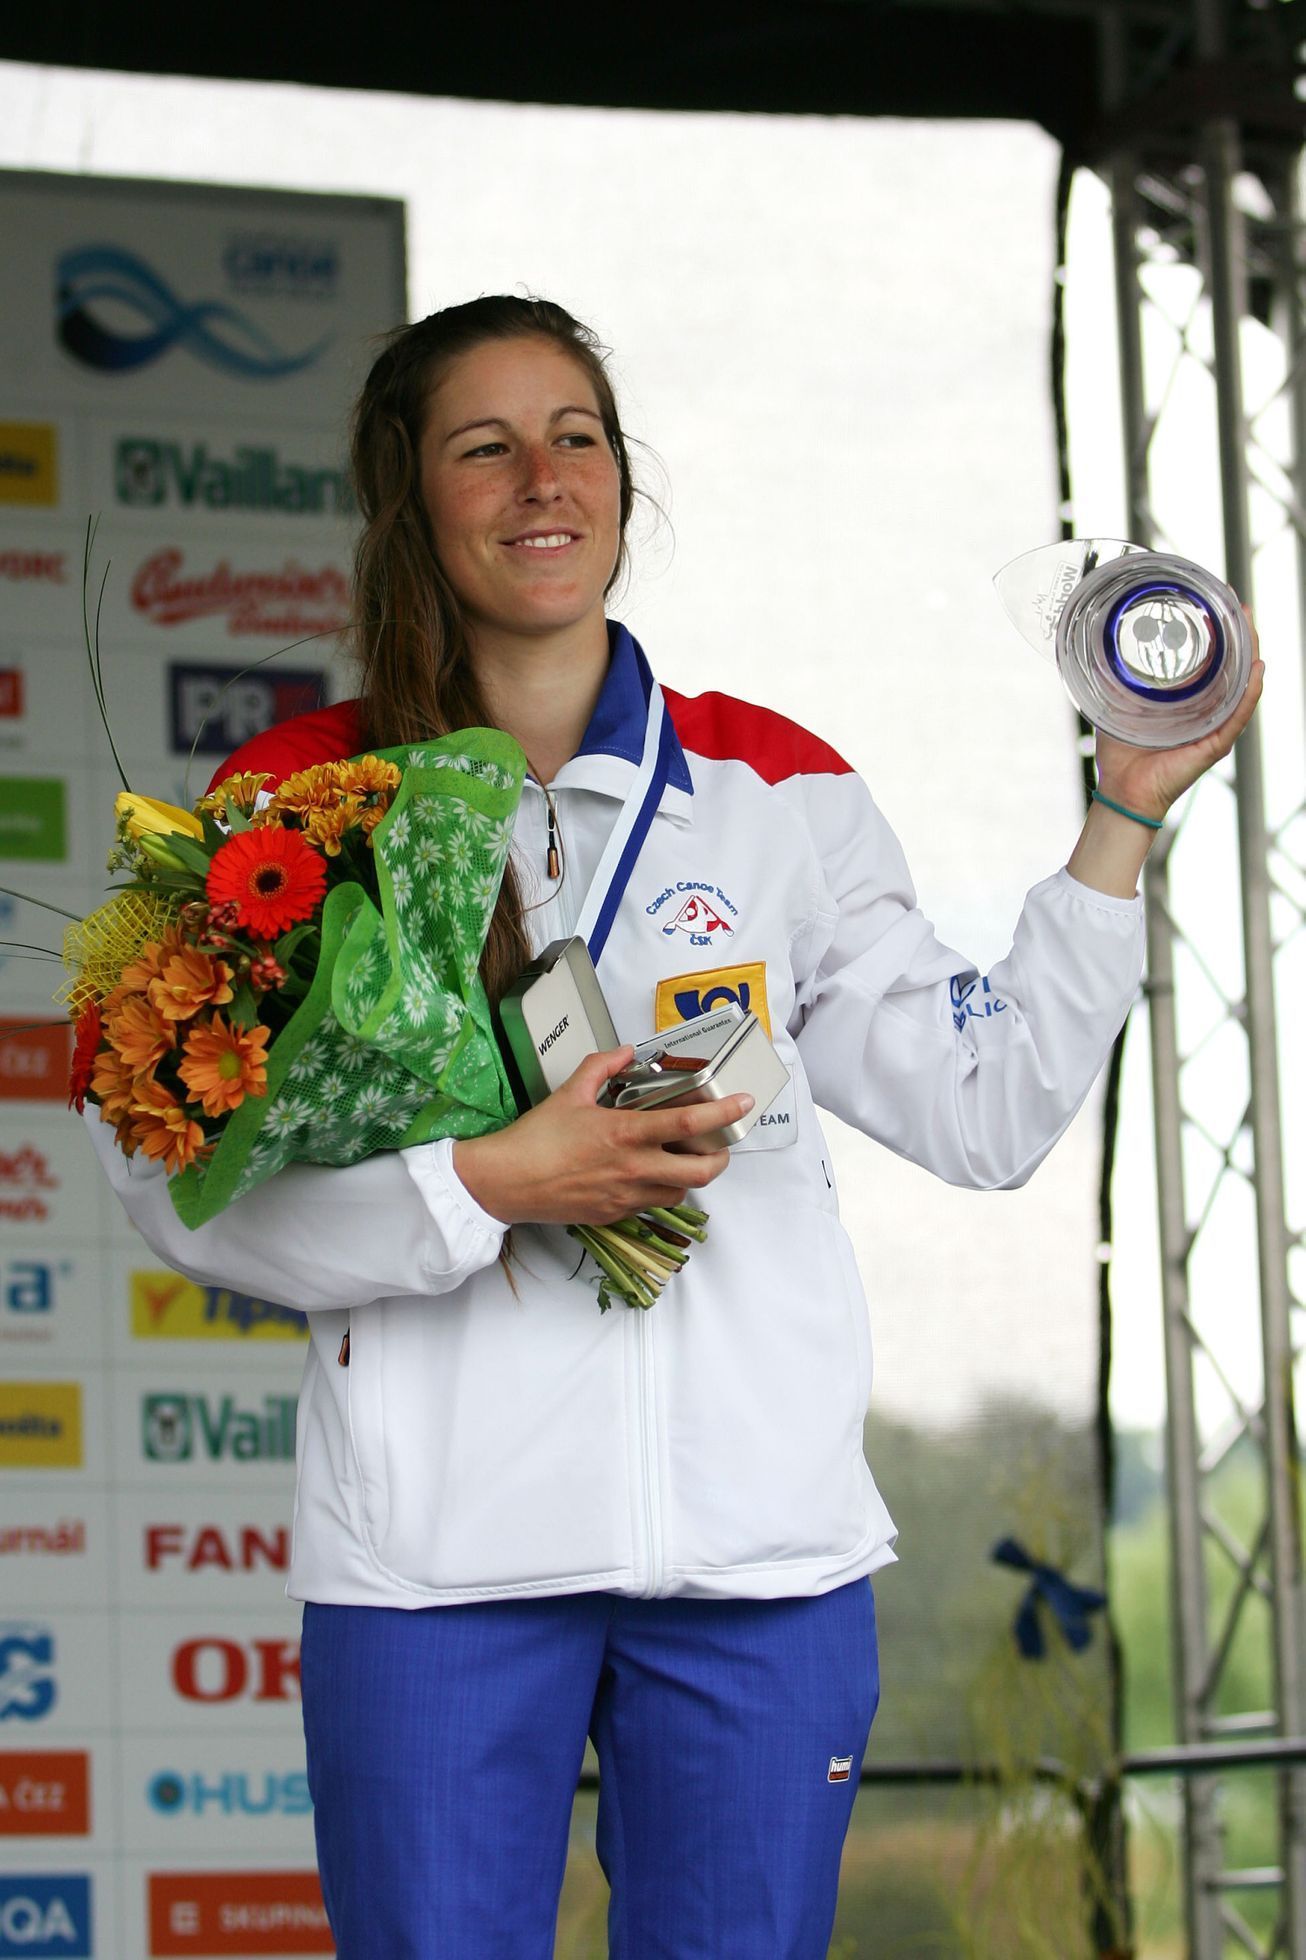 SP vodní slalom, Troja 2015: Kateřina Kudějová